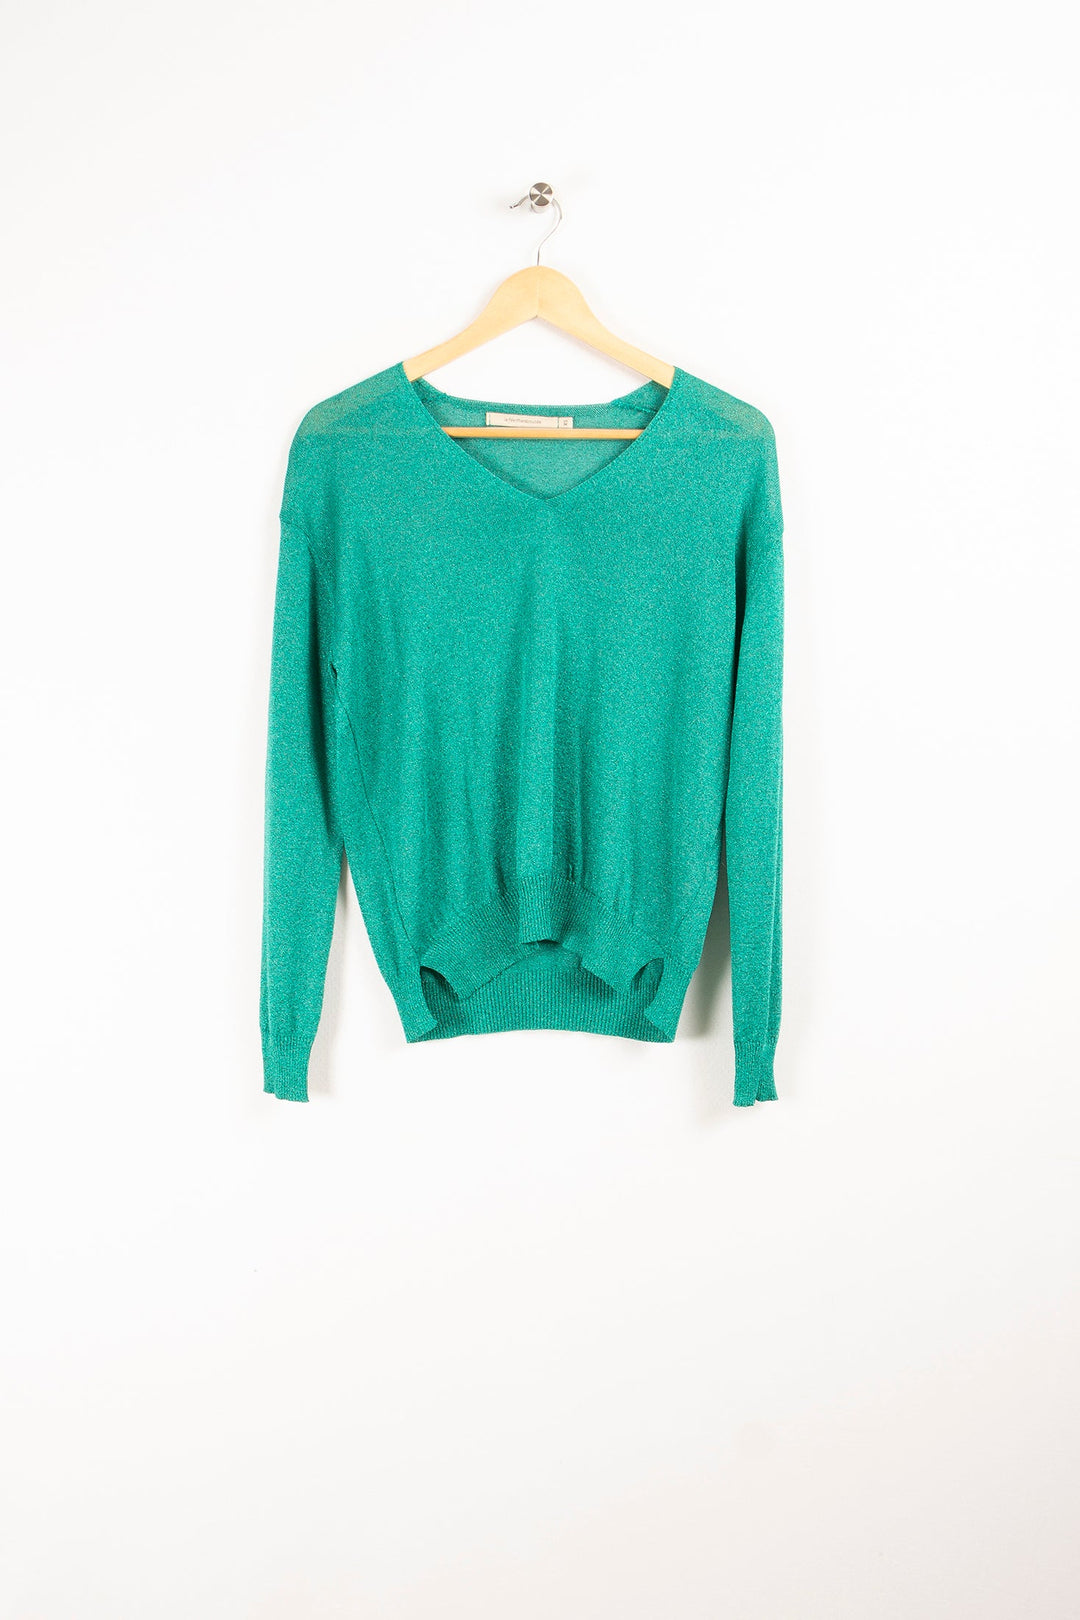 Iridescent knit sweater - XS/34